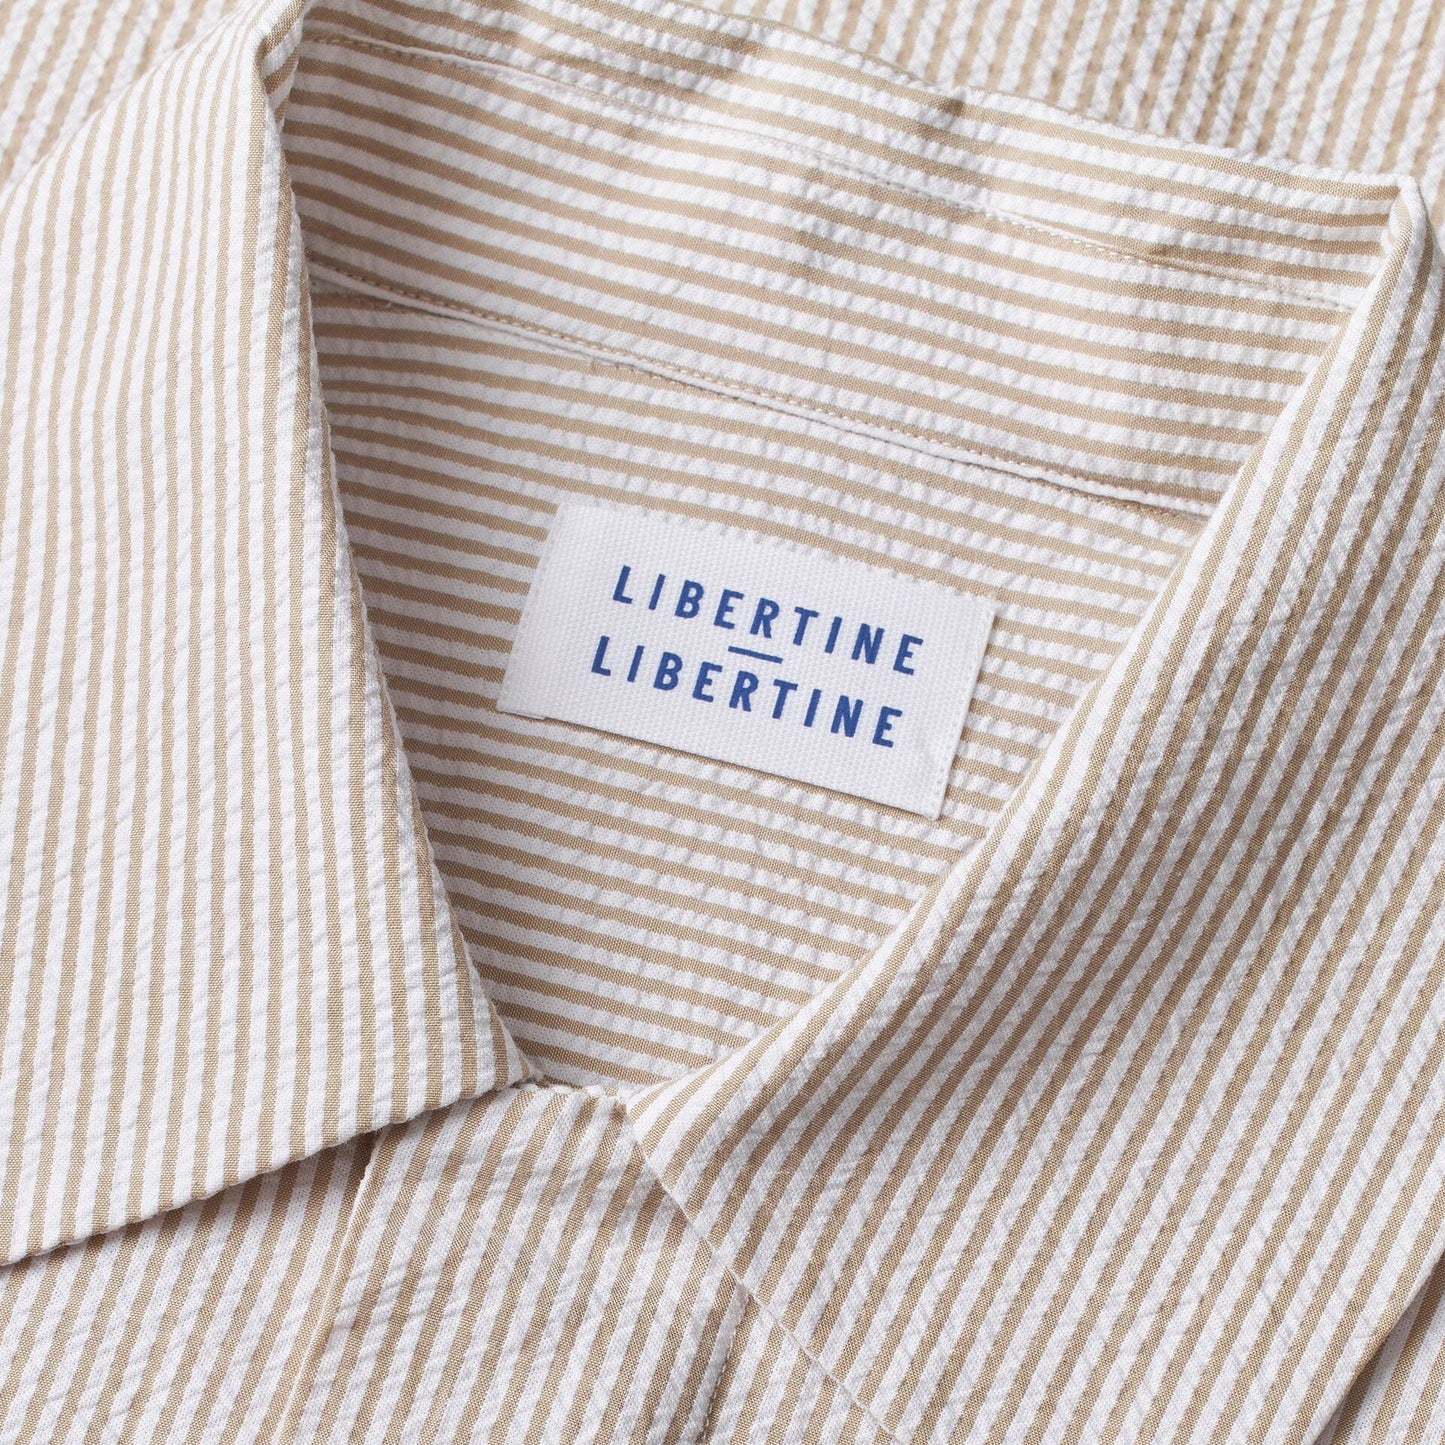 Libertine-Libertine Domain Shirt - Beige Stripe Shirt Libertine-Libertine 